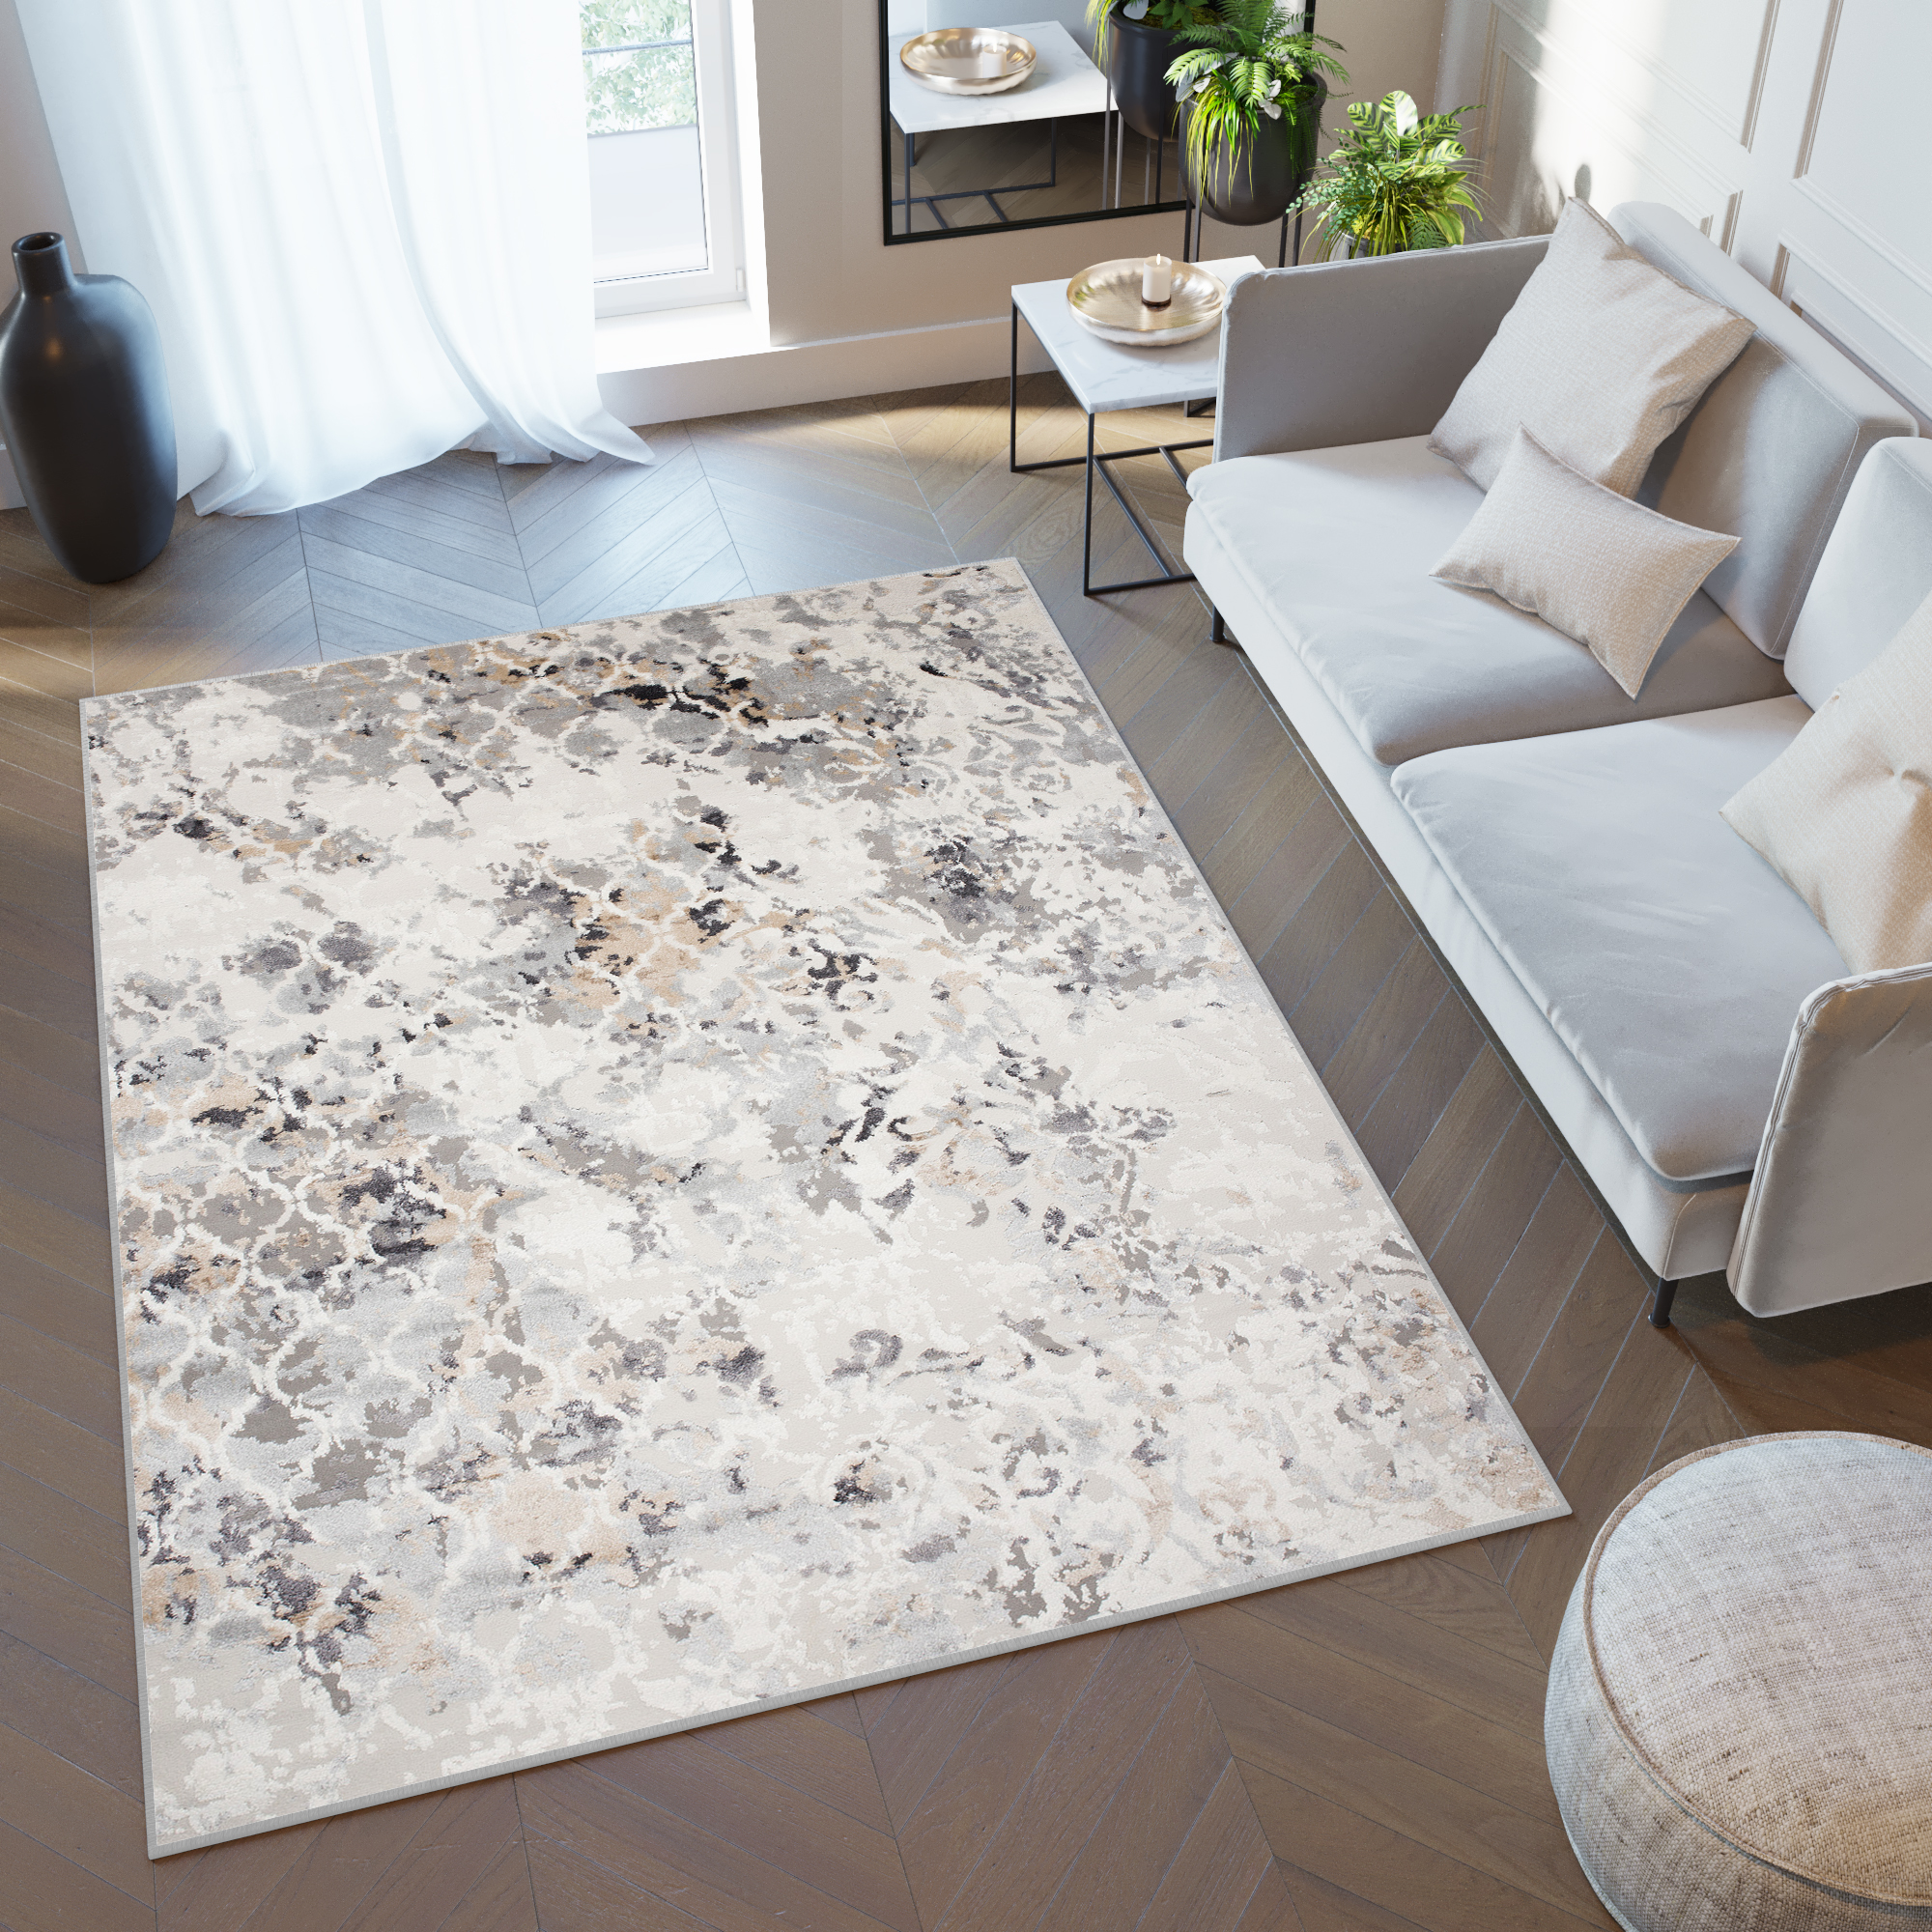 Teppich Kurzflor Grau Beige Trellis Muster Marrokanisch Wohnzimmer  Schlafzimmer | eBay